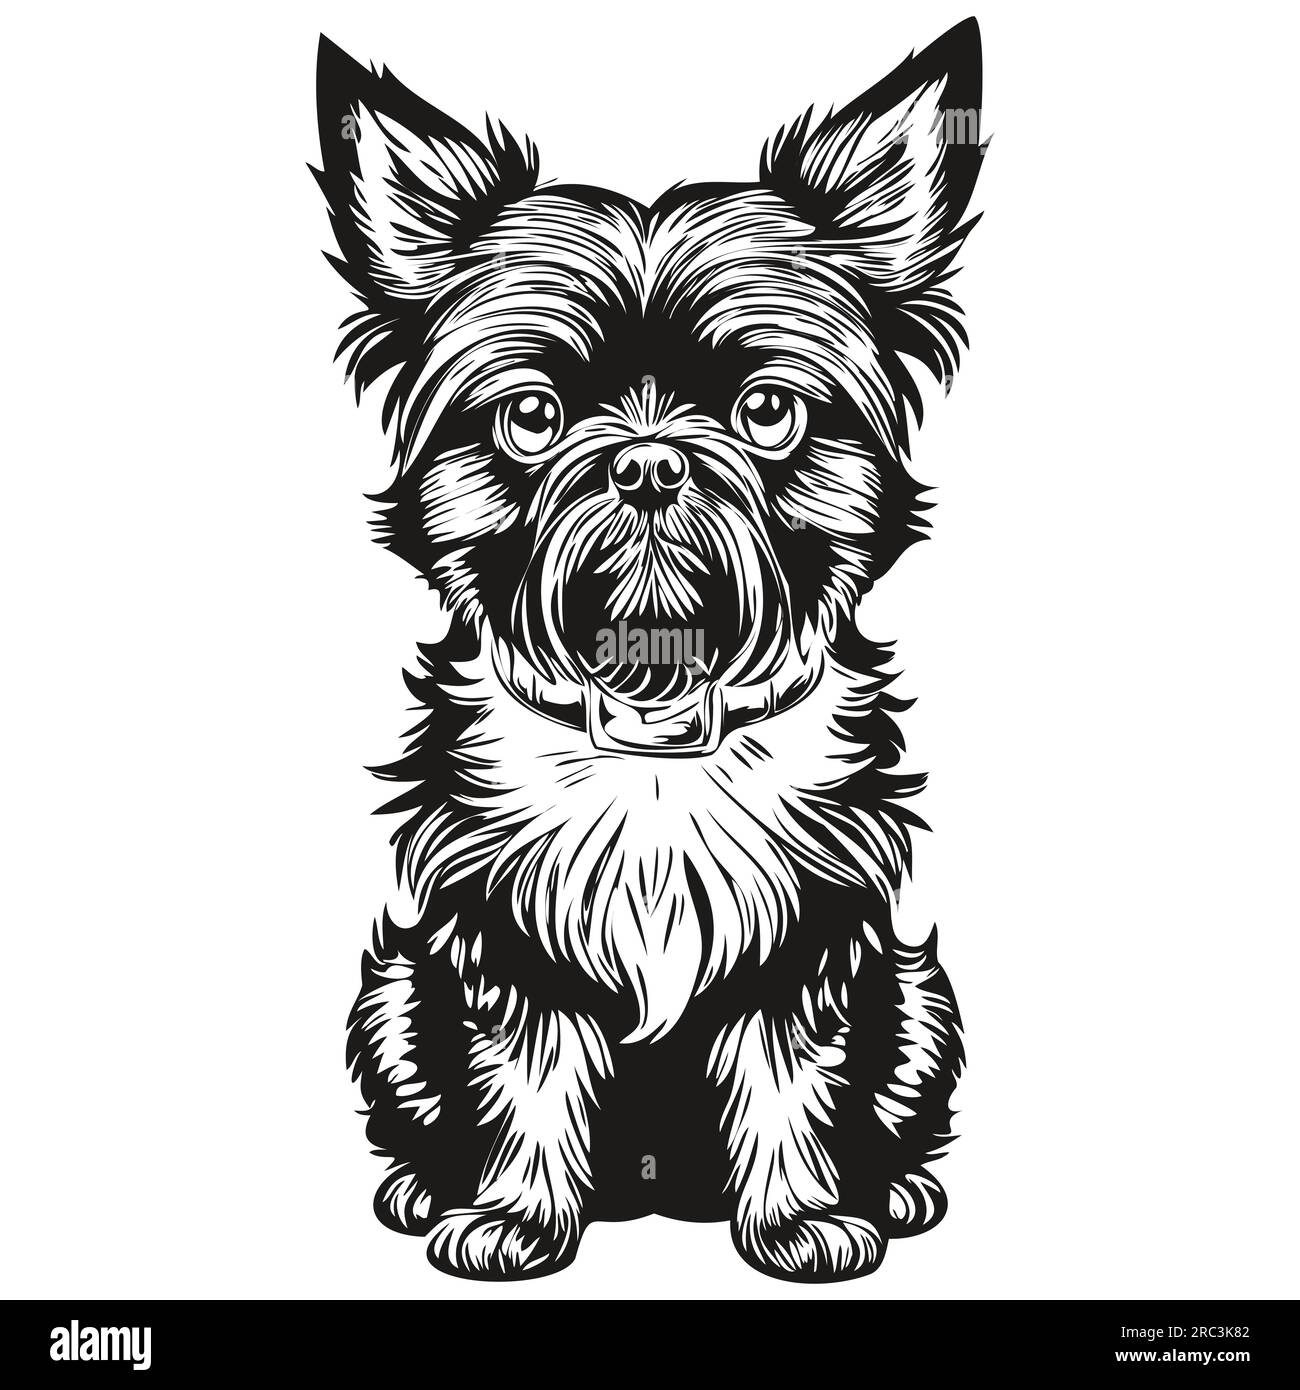 Affenpinscher illustration de ligne de chien, portrait de visage de croquis d'encre noire et blanche dans la silhouette réaliste d'animal de compagnie vecteur Illustration de Vecteur